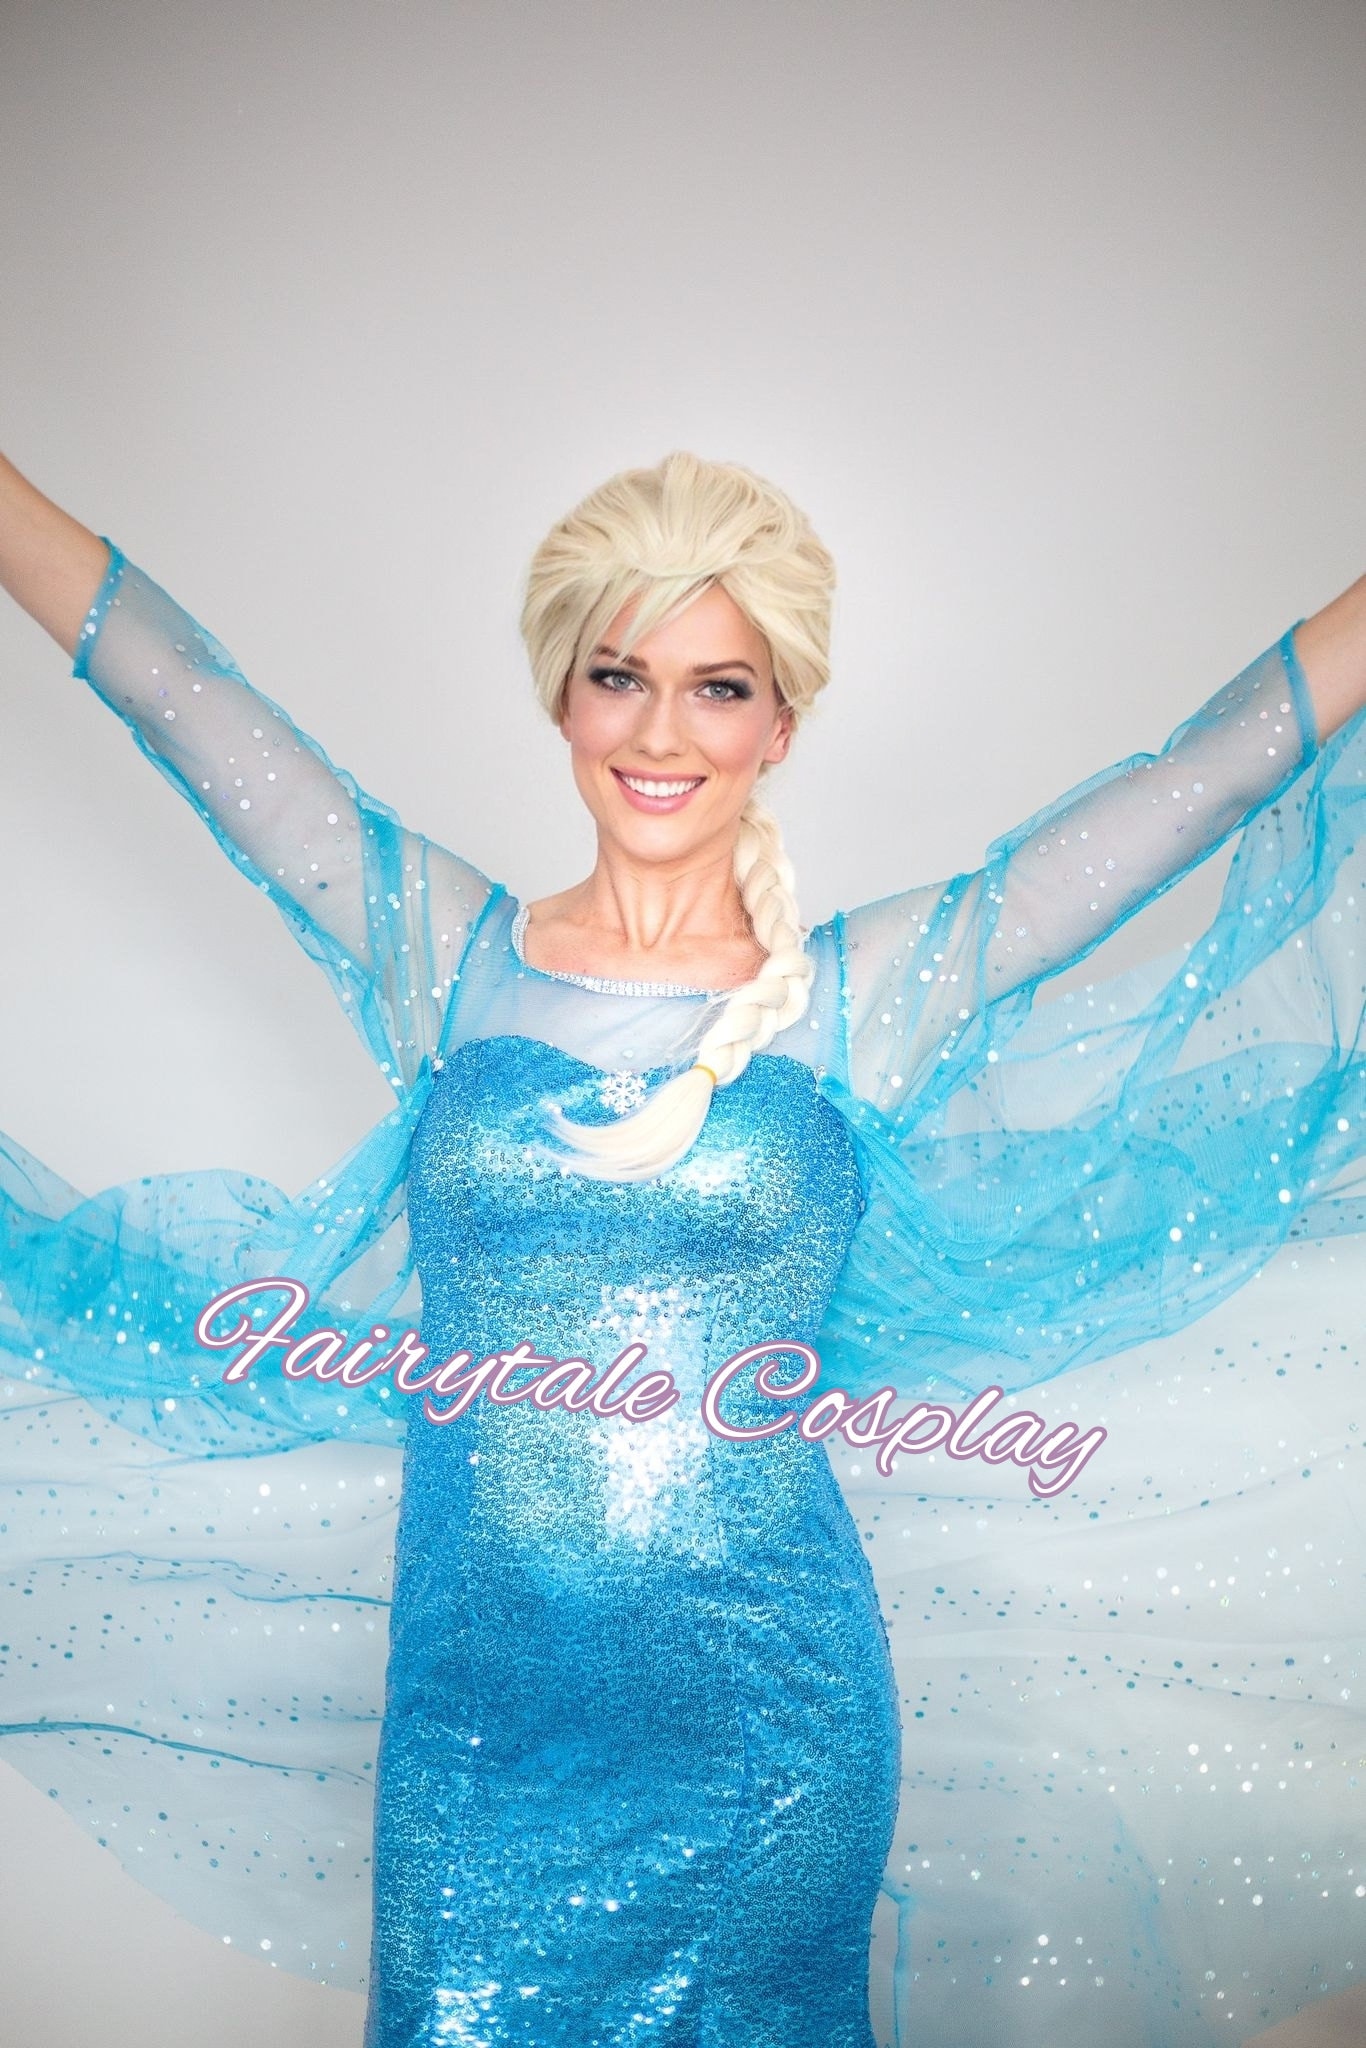 Costume classique d'Elsa de La Reine des neiges de Disney par